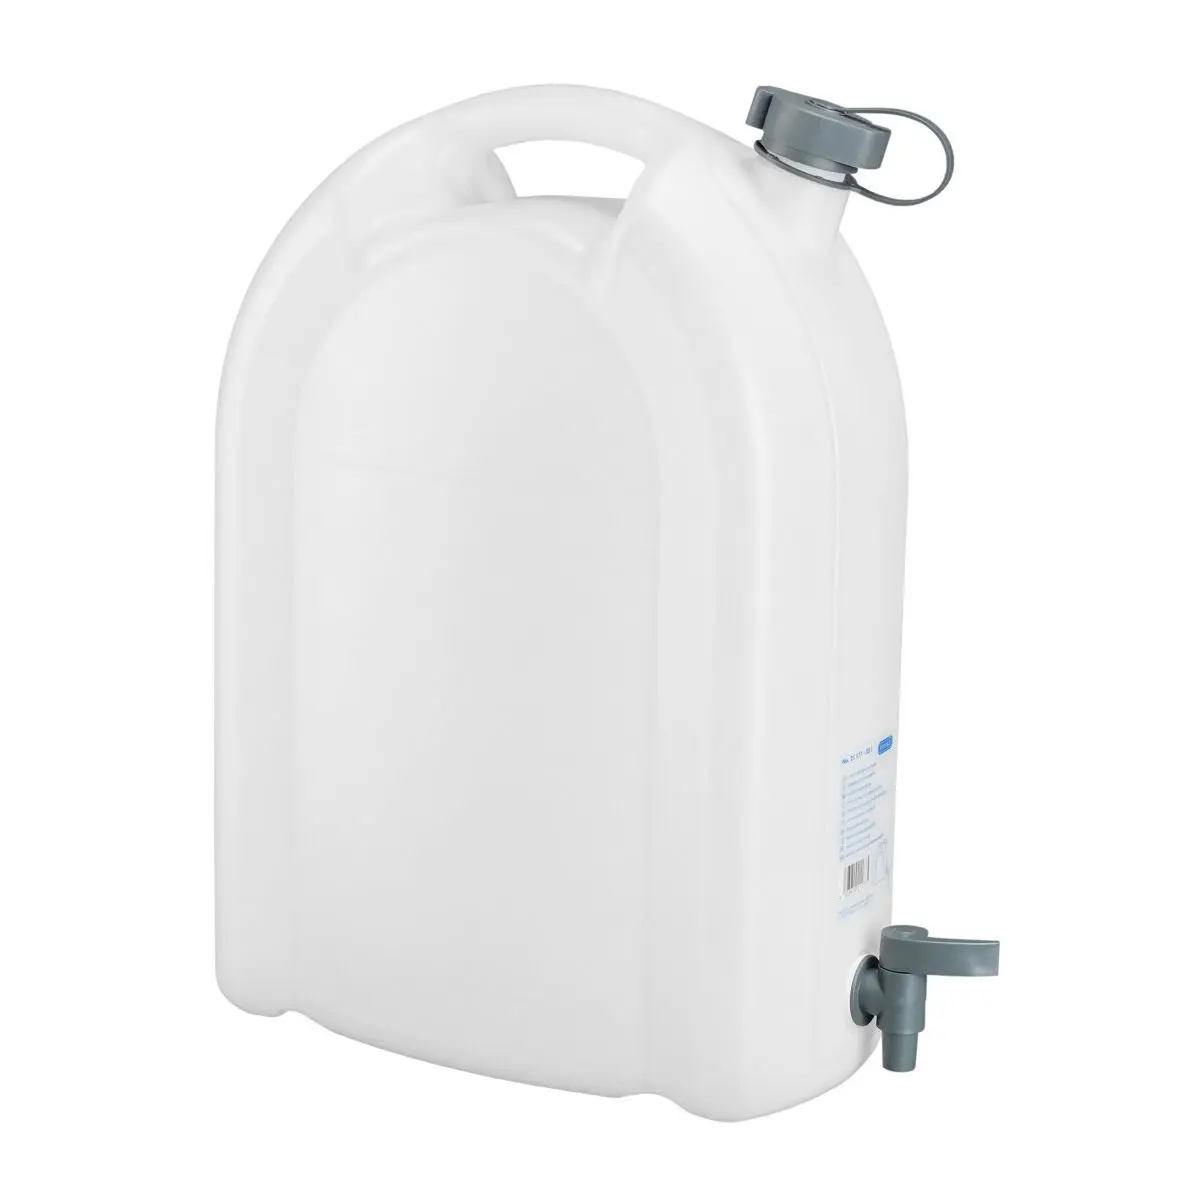 Víztartály - 20 liter